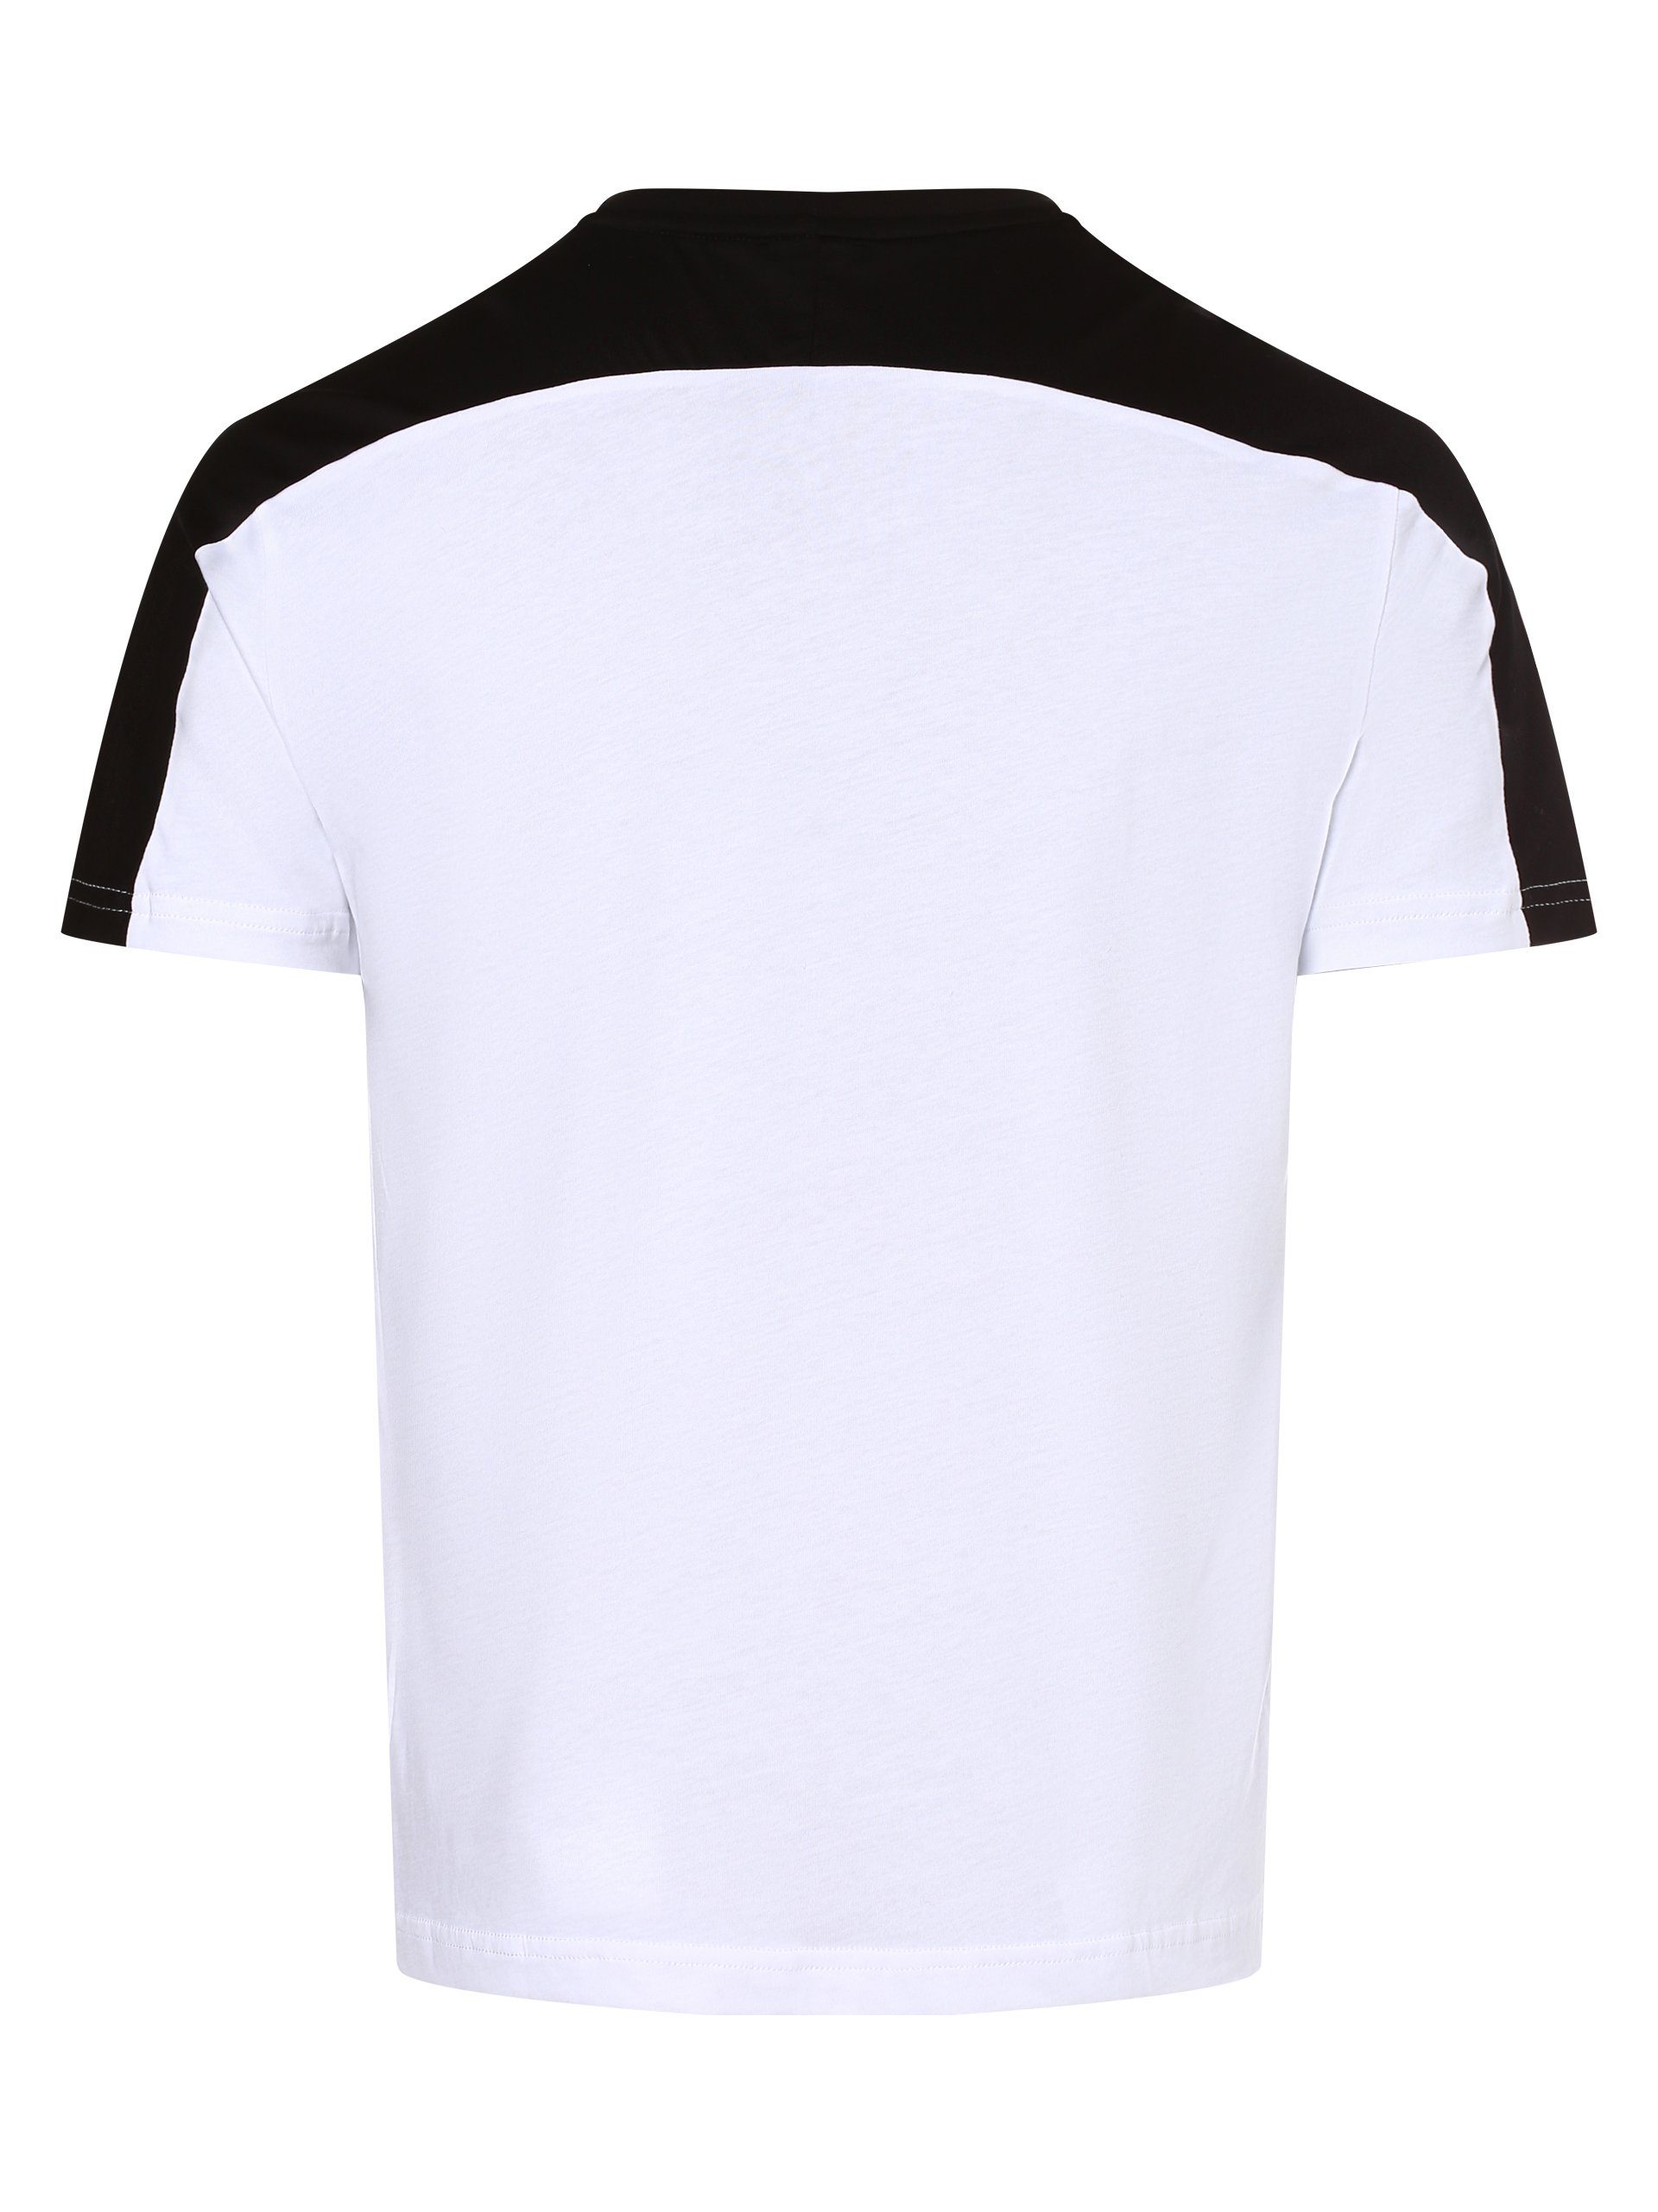 Emporio T-Shirt schwarz weiß Armani